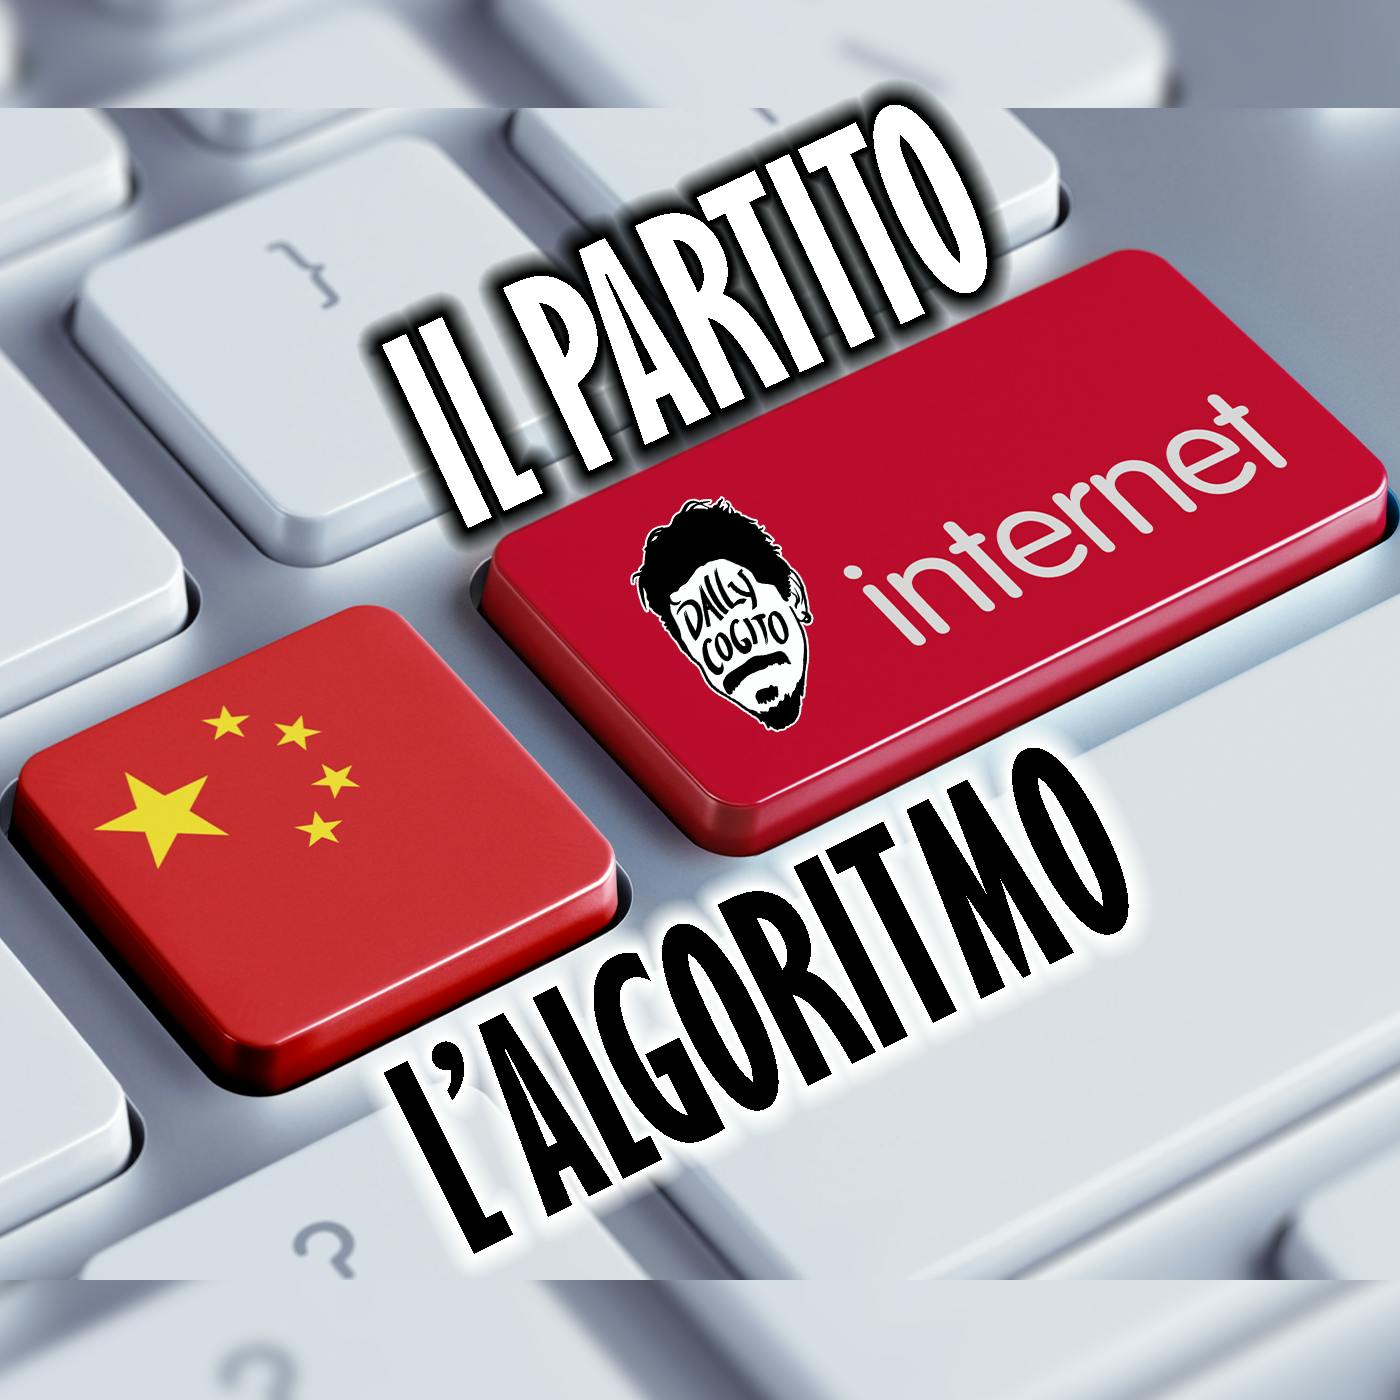 Il Partito e l'Algoritmo: la Cina, il Web e Noi